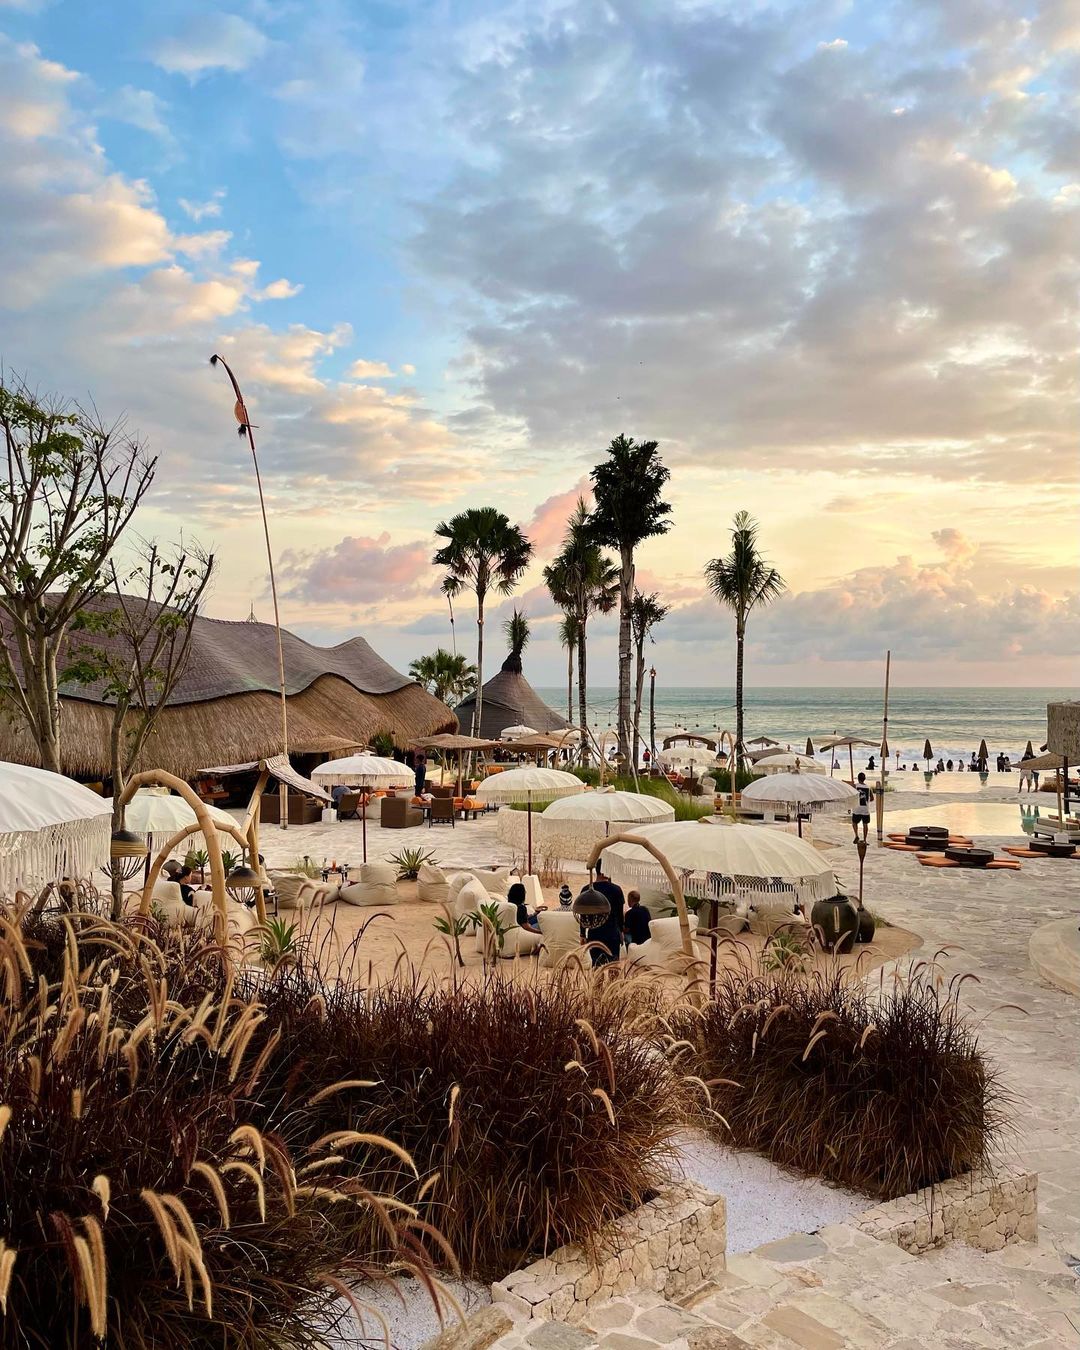 Daya Tarik Mari Beach Club Bali Image From @timintheworld_